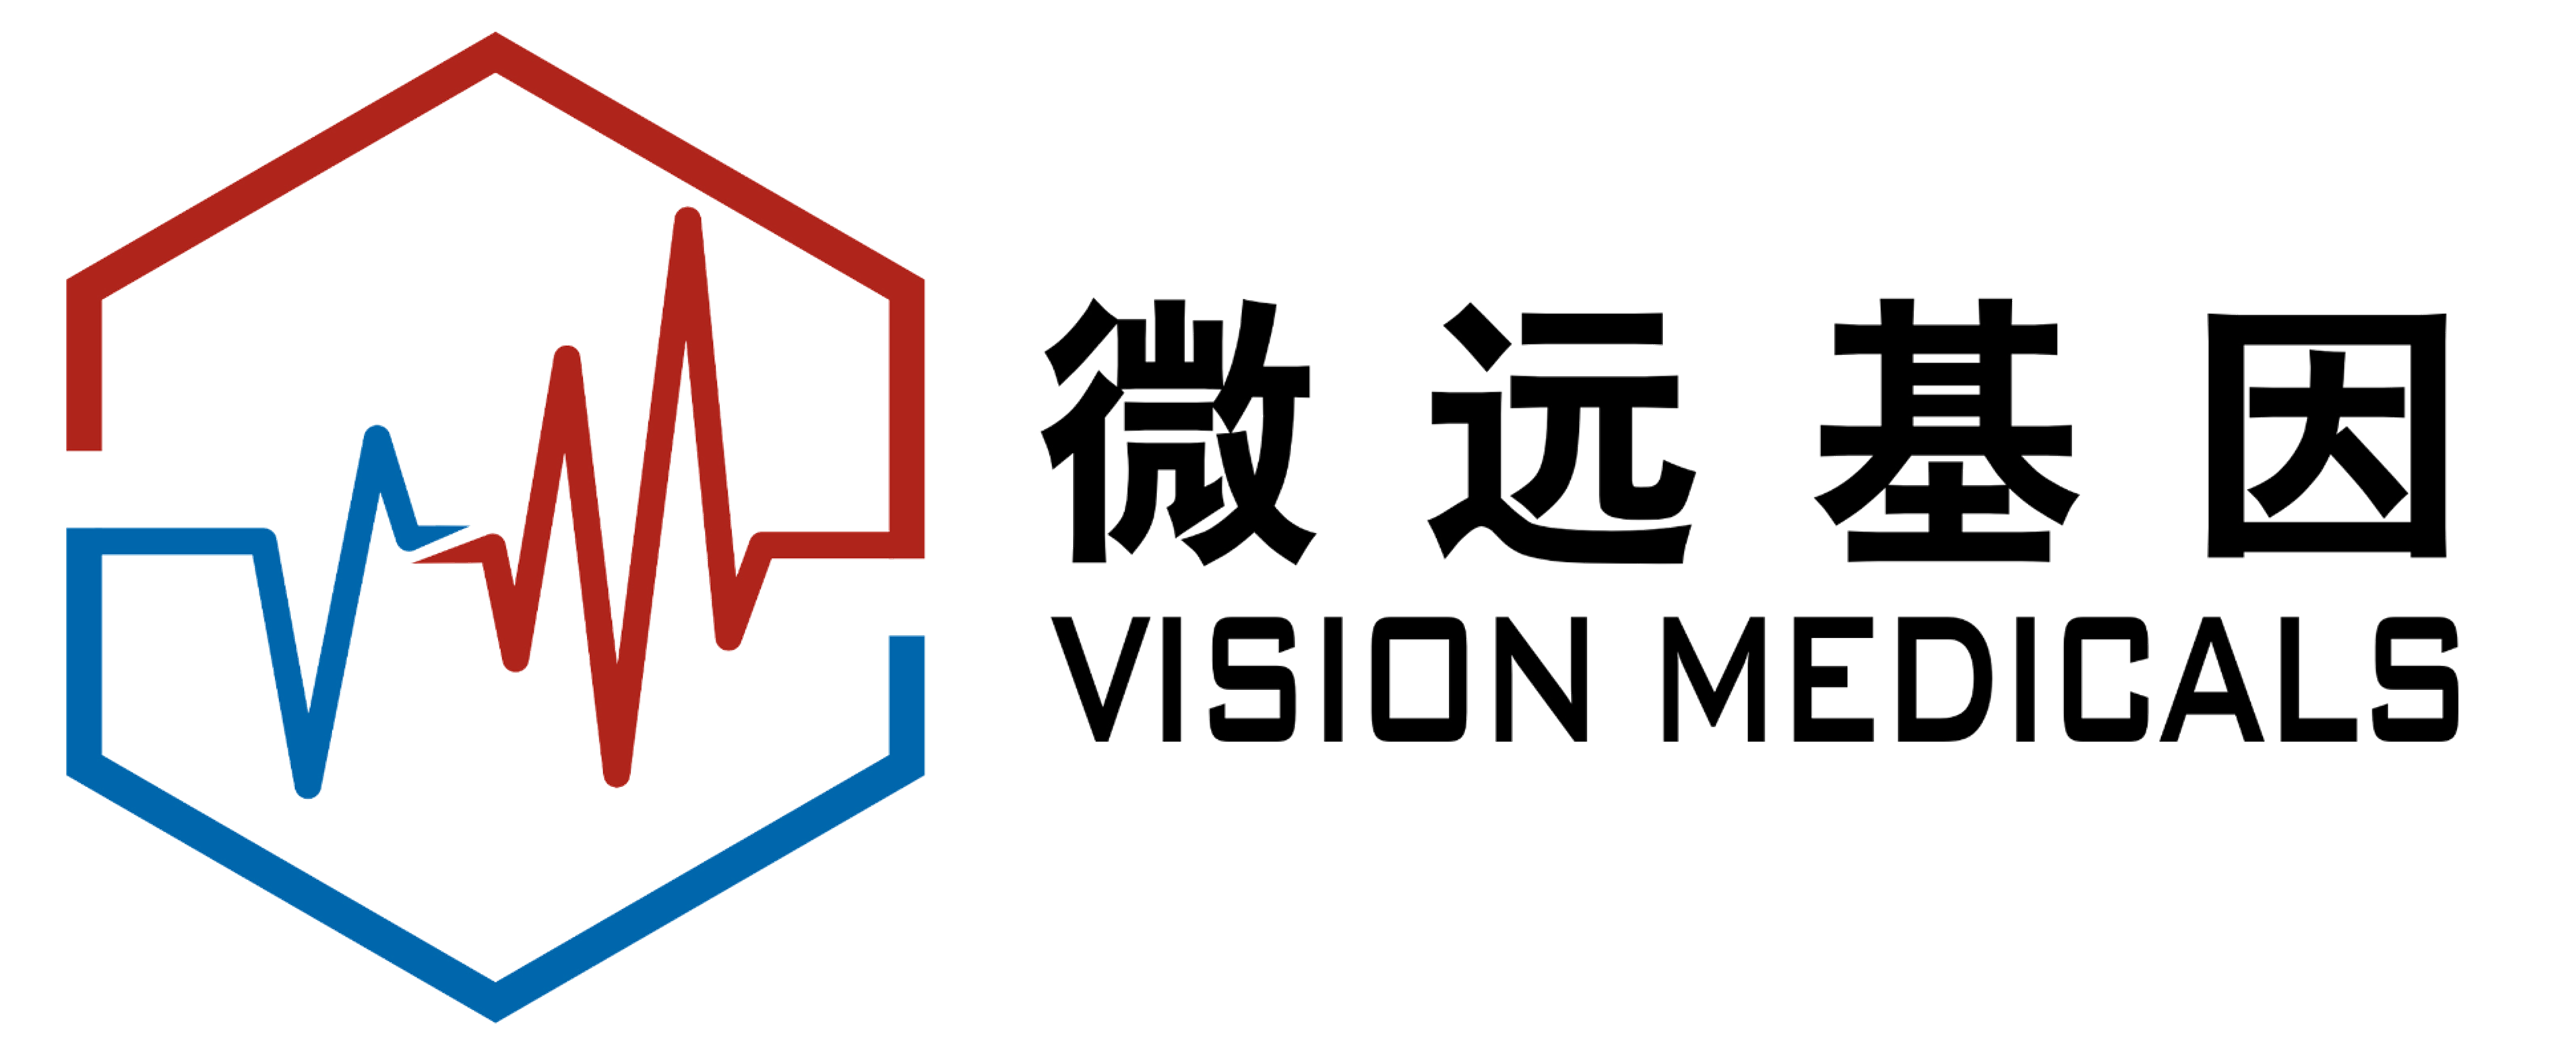 Vision Medicals